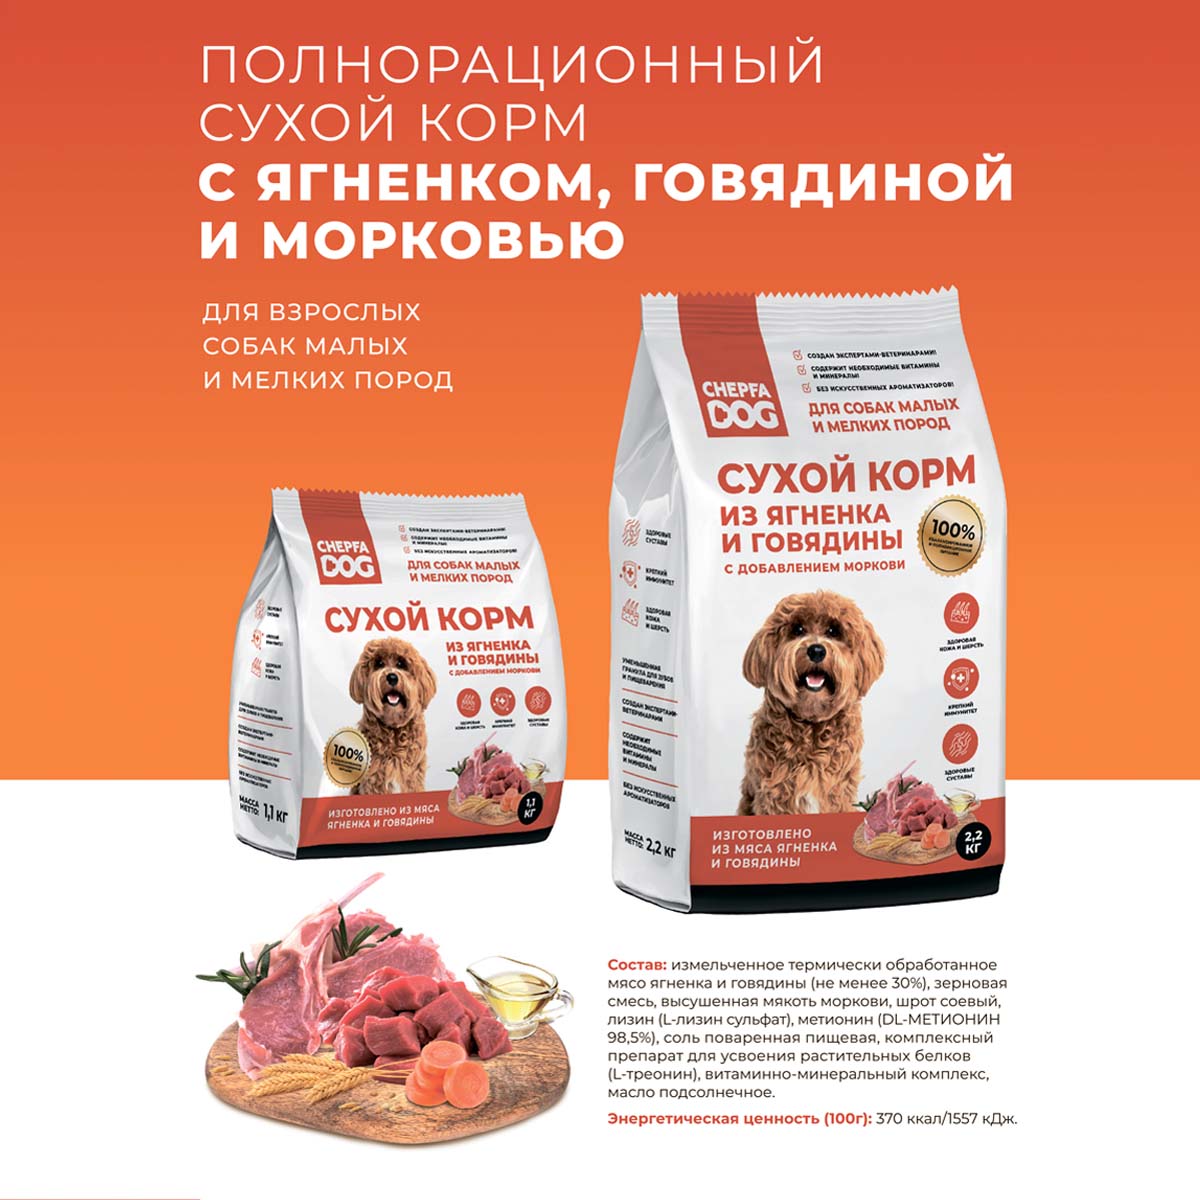 Сухой корм для собак Chepfa Dog Полнорационный ягненок и говядина 2.2 кг для взрослых собак малых и мелких пород - фото 8